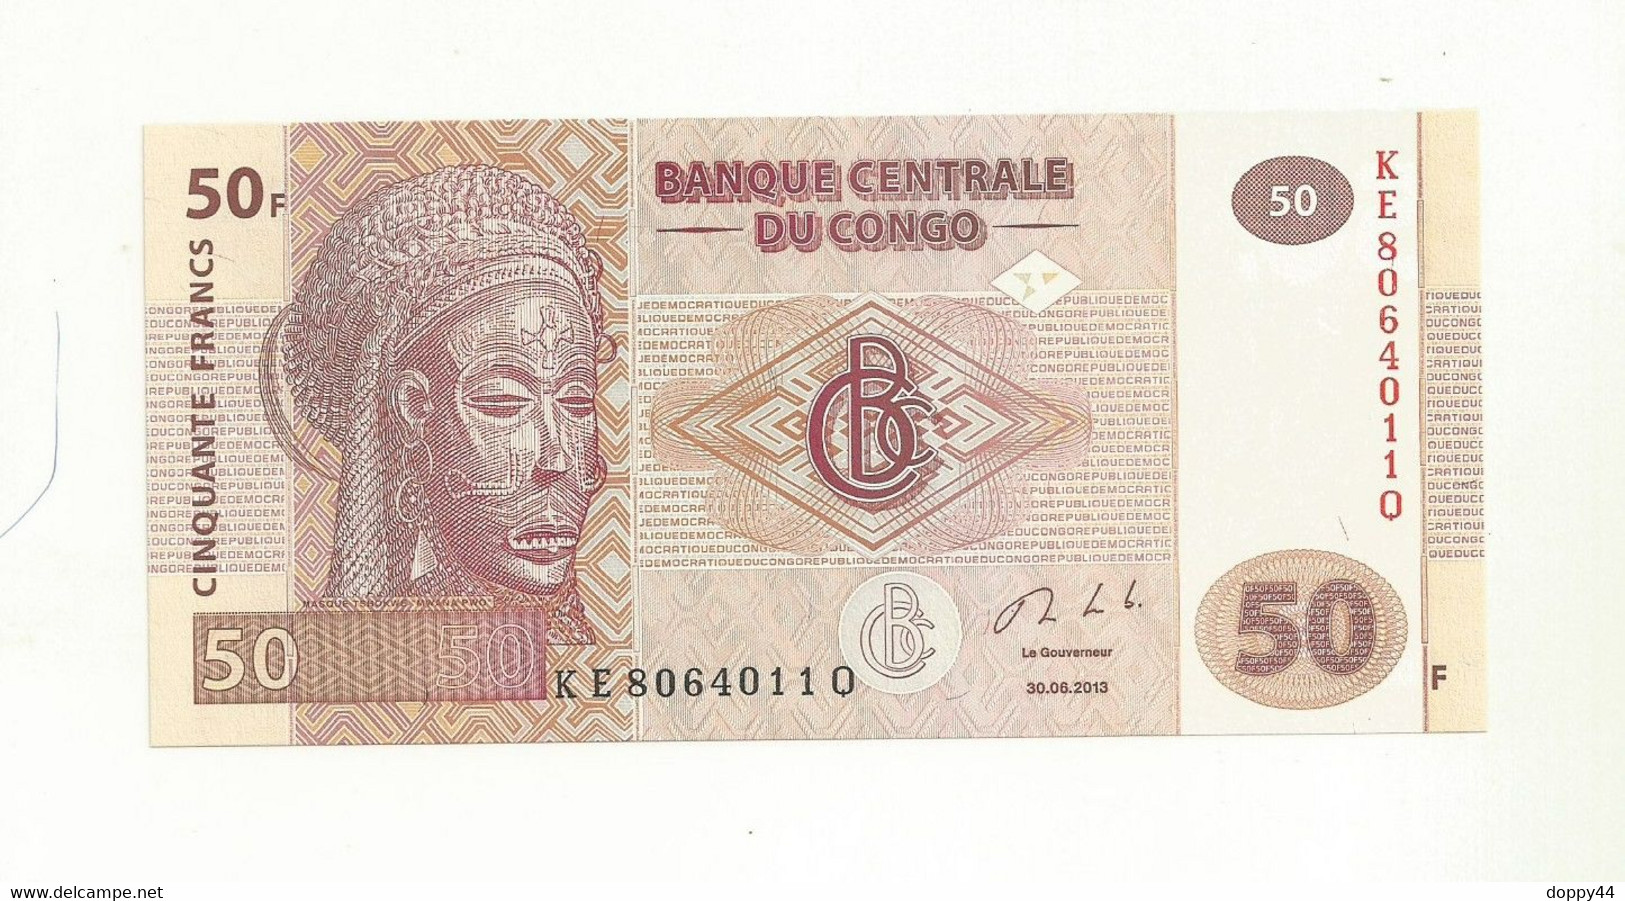 BILLET NEUF BANQUE CENTRALE DU CONGO 50 FRANCS EMIS EN 2013 SUPERBE. - Repubblica Del Congo (Congo-Brazzaville)